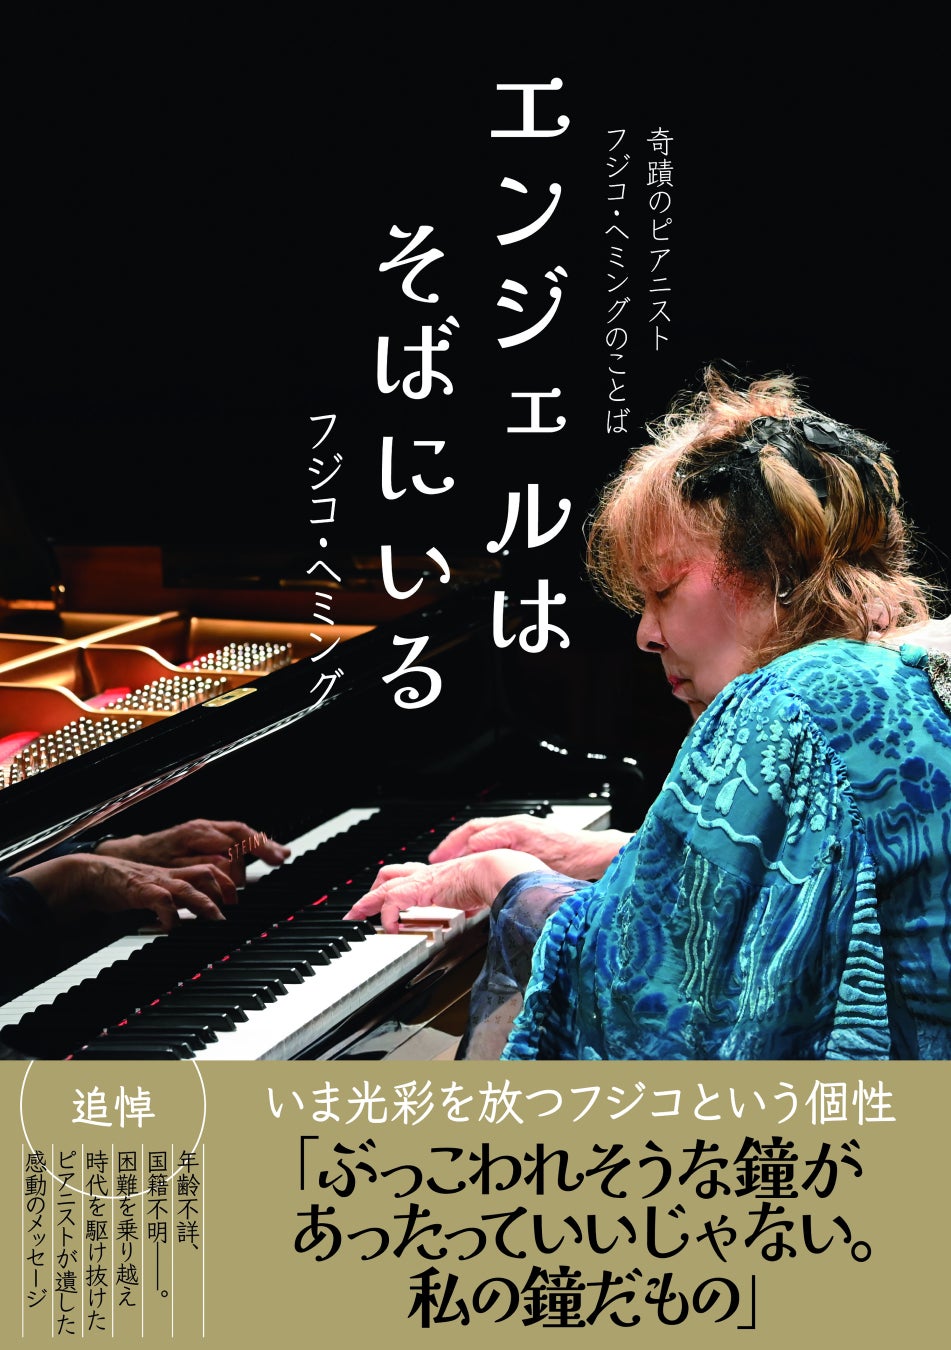 DICT Records による、人気作曲家の石塚玲依が隔週で新曲を書き下ろす新シリーズ「イーゼルの上の音楽」が本日より配信開始！